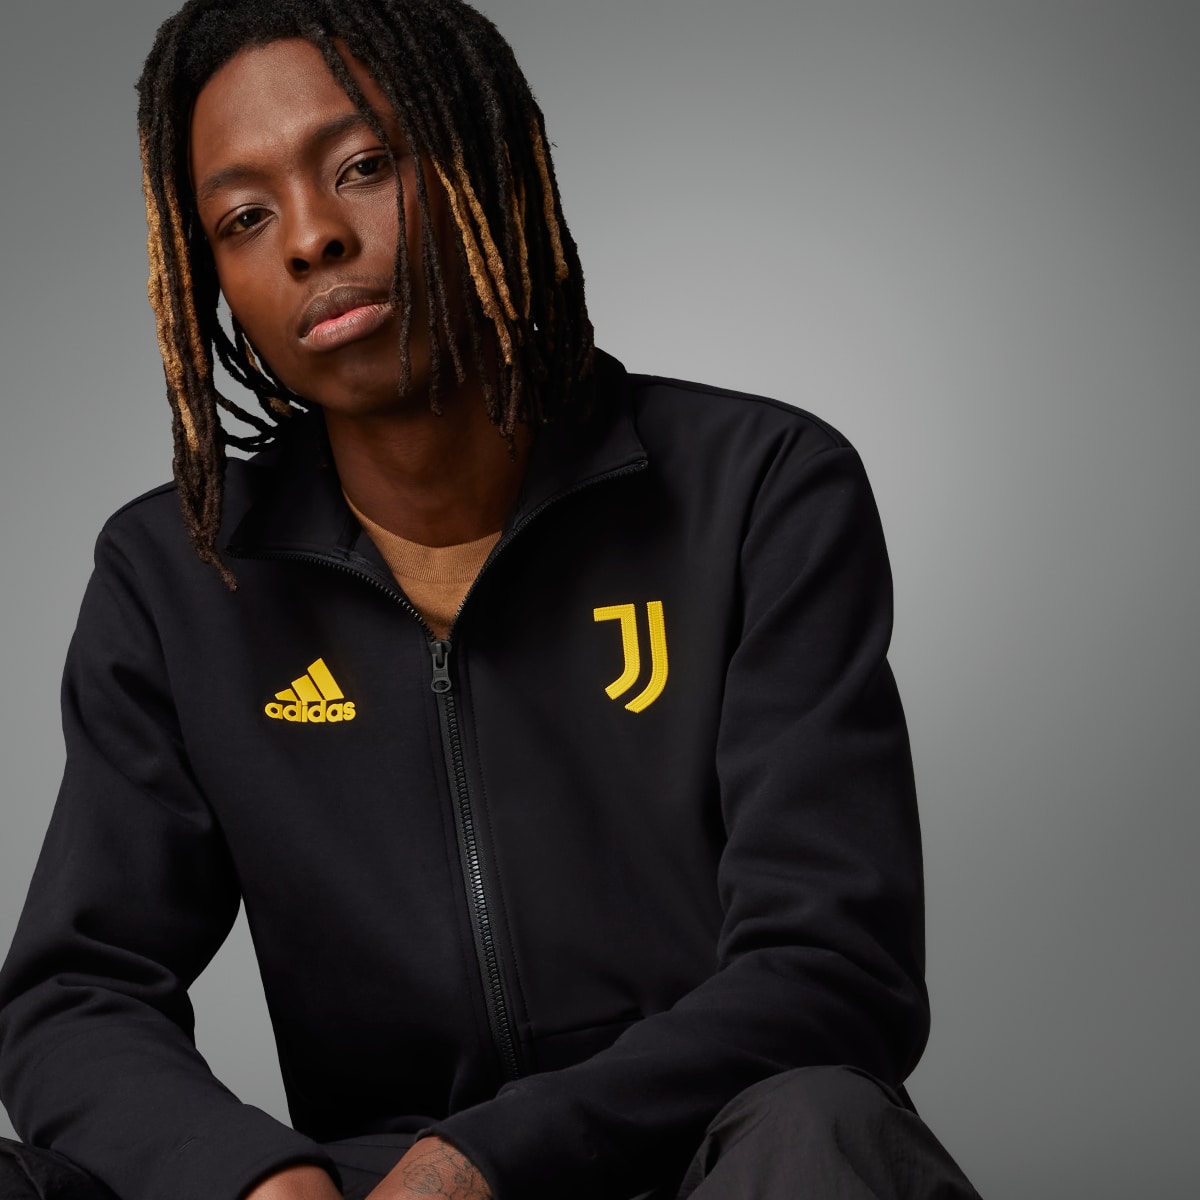 Adidas Juventus Anthem Jacket. 4